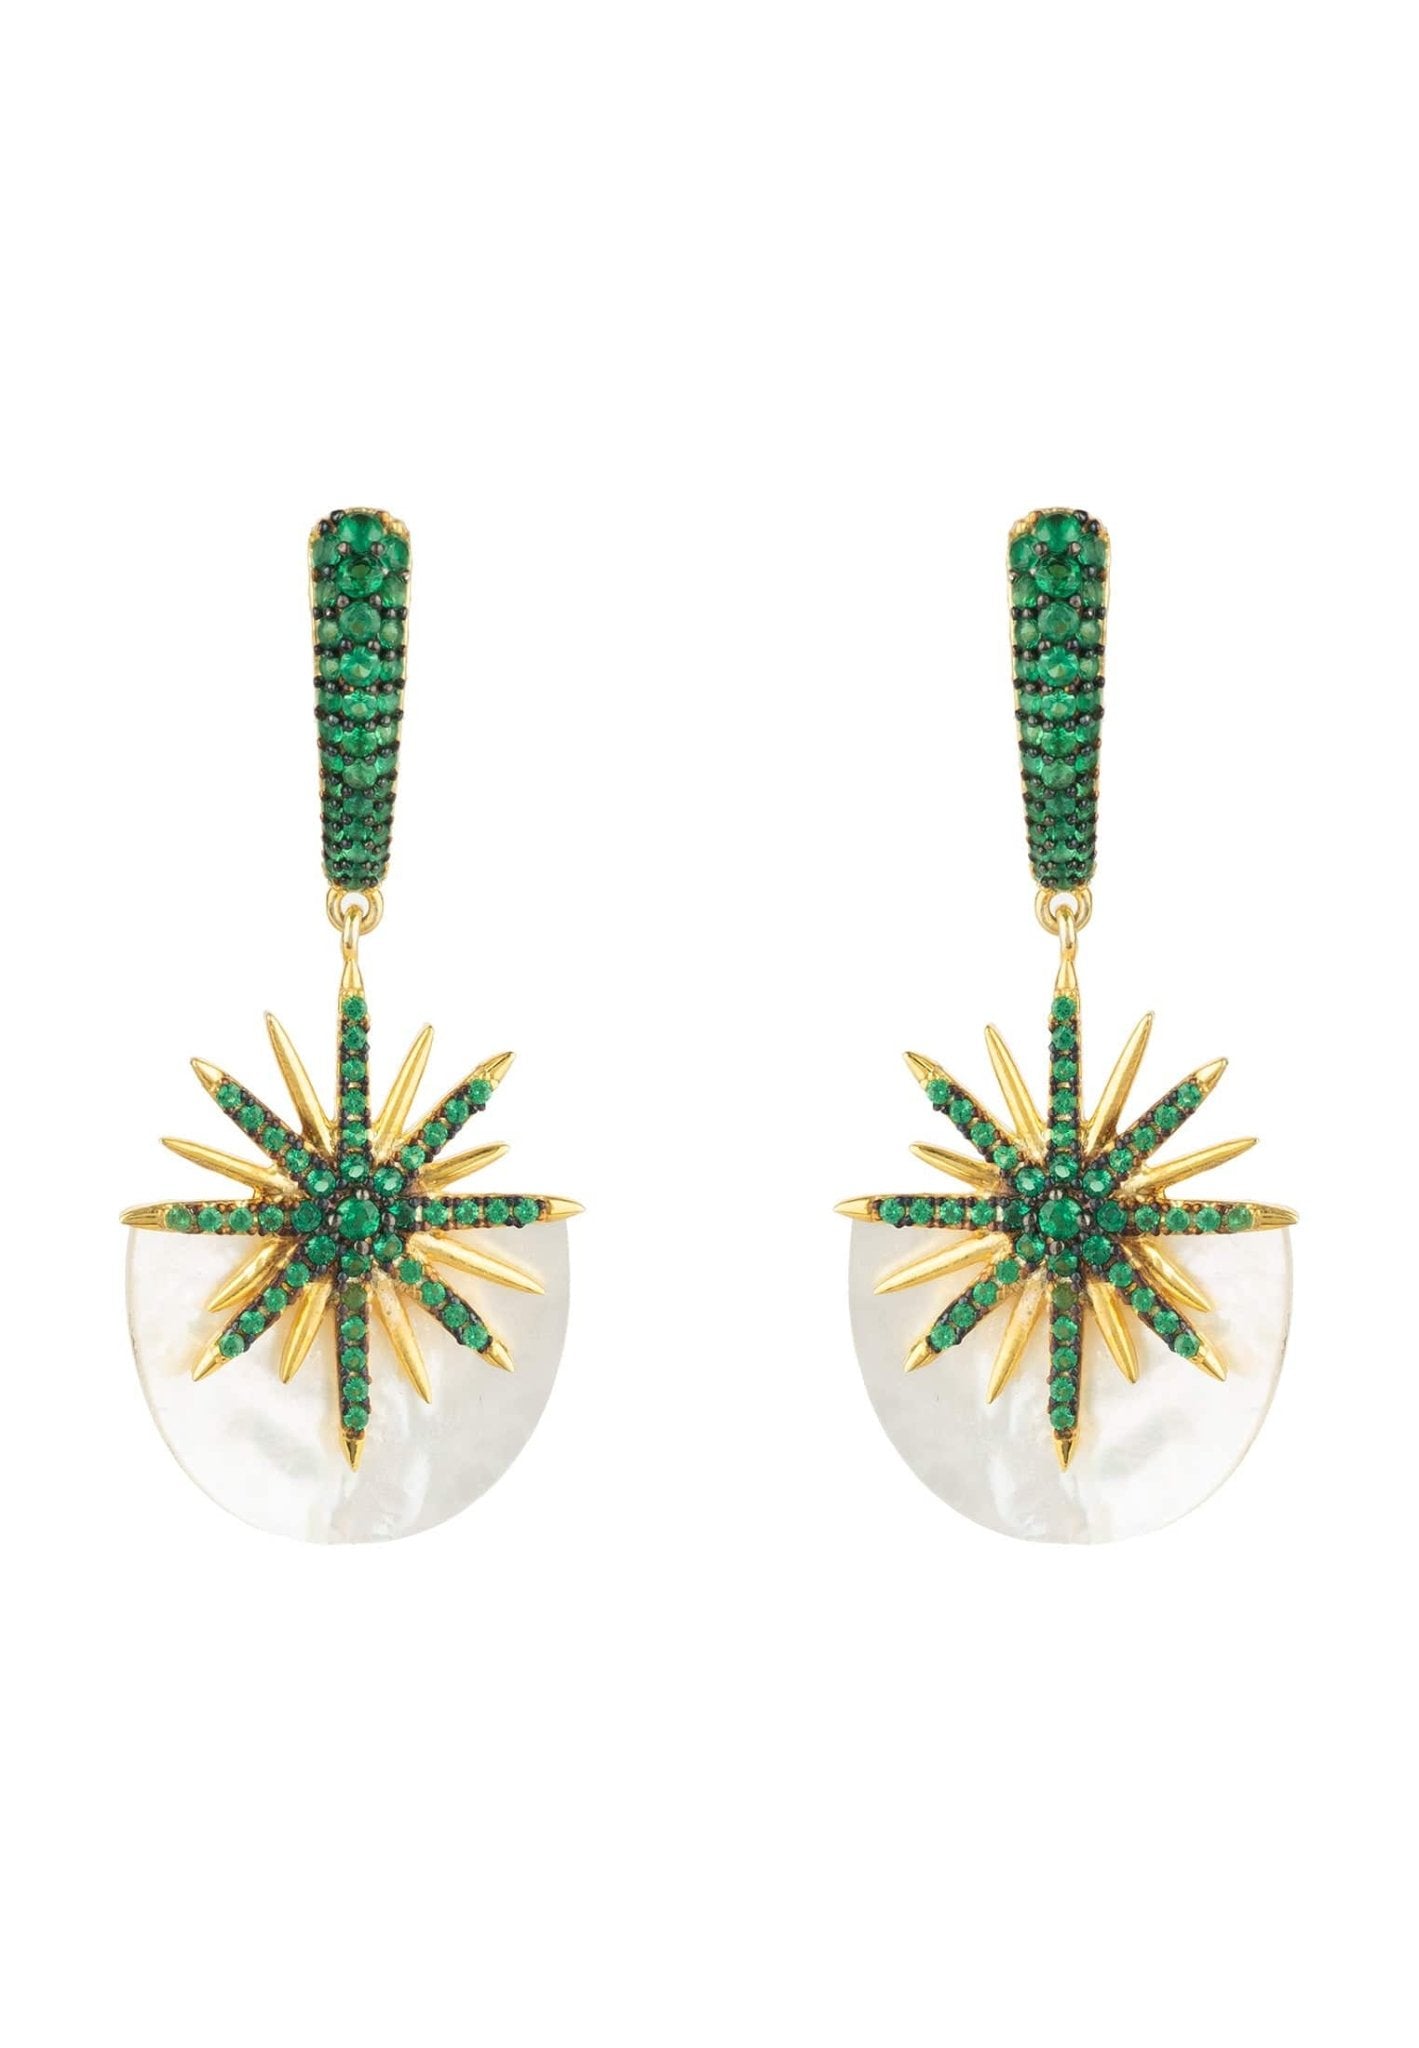 Sunburst White Mother Of Pearl Earrings Emerald Green Gold - LATELITA Earrings